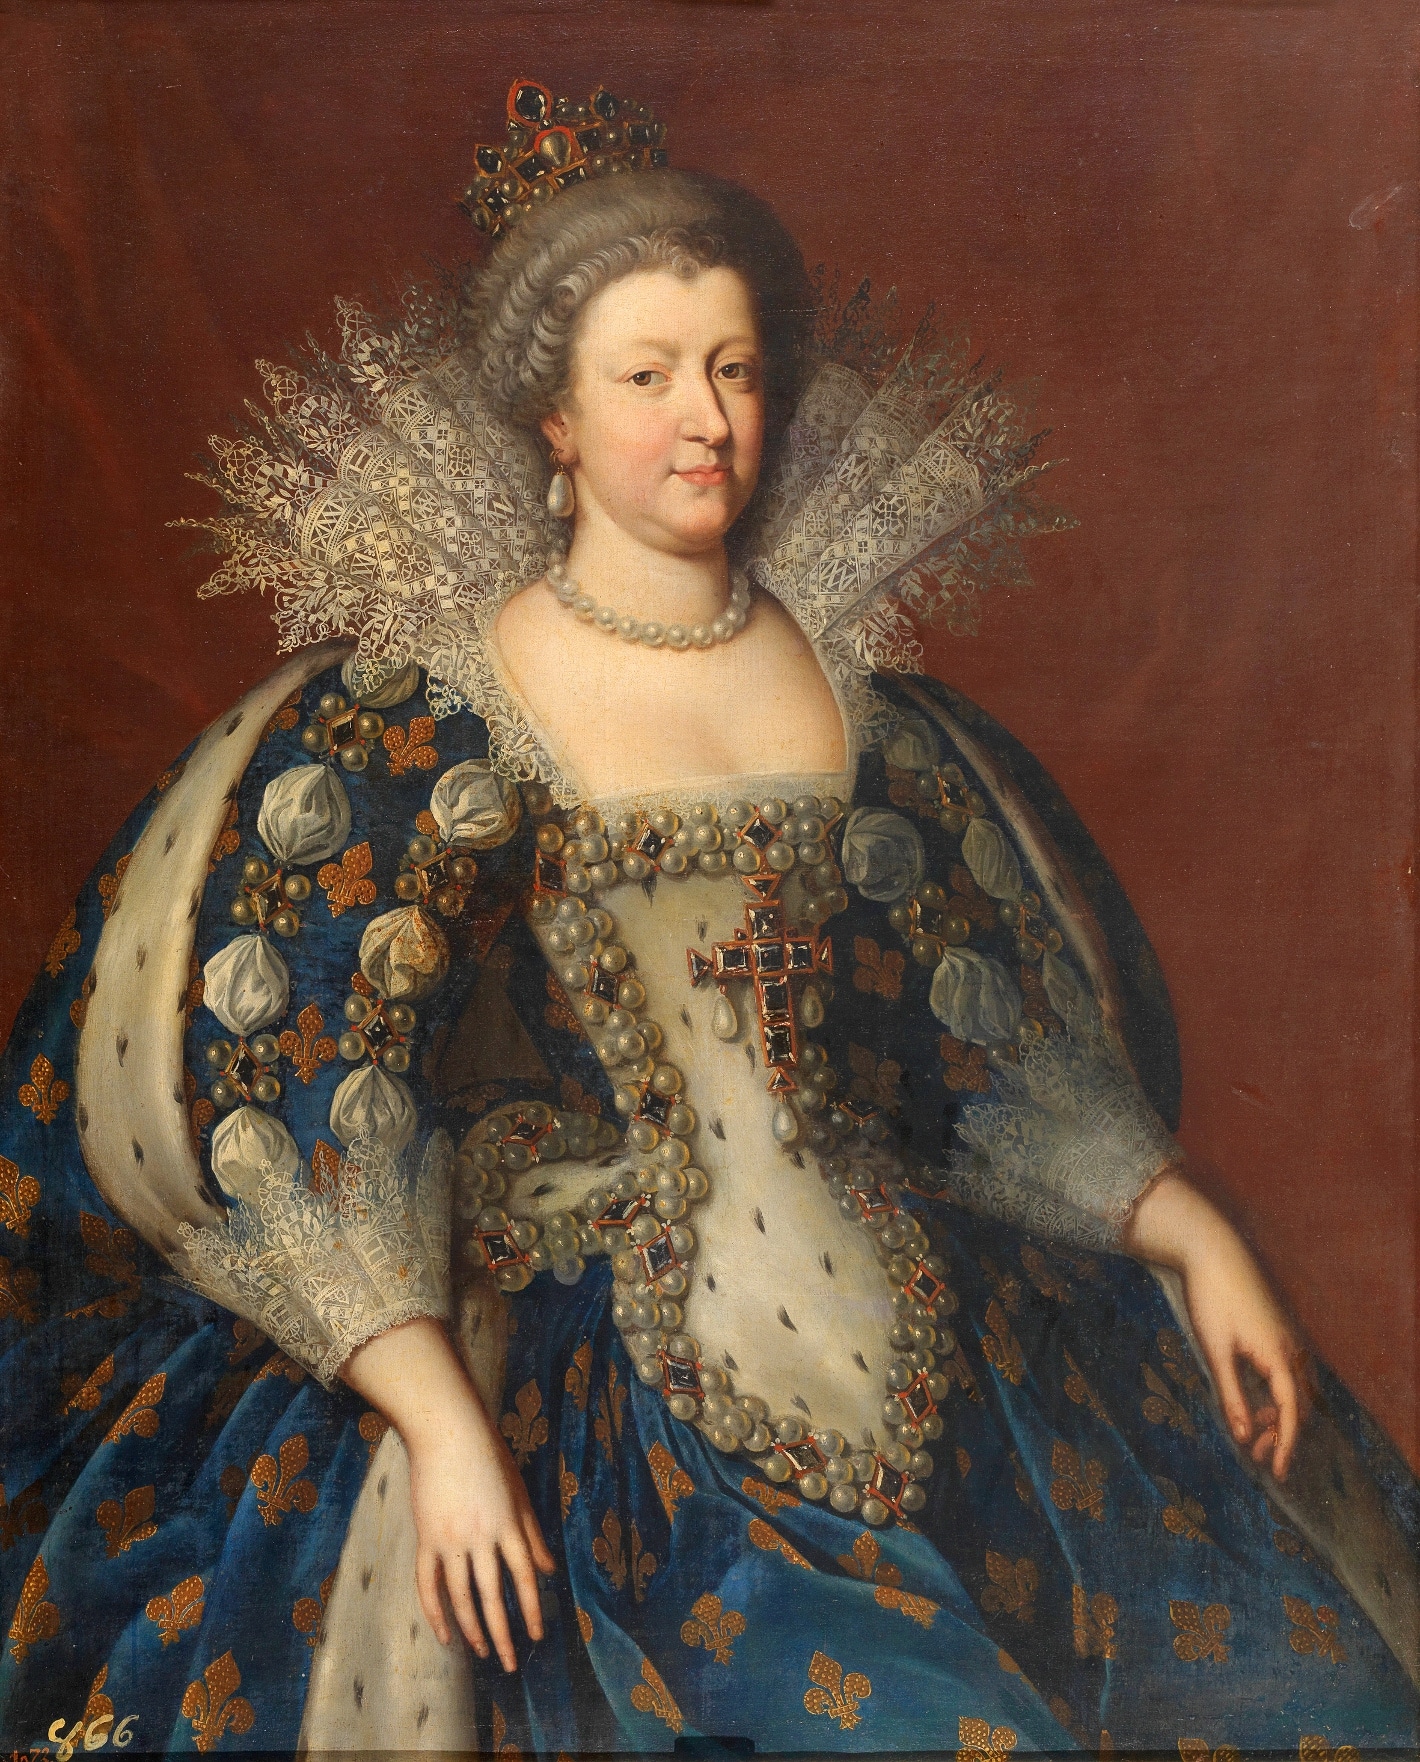 Мария Медичи, королева Франции с темной репутацией